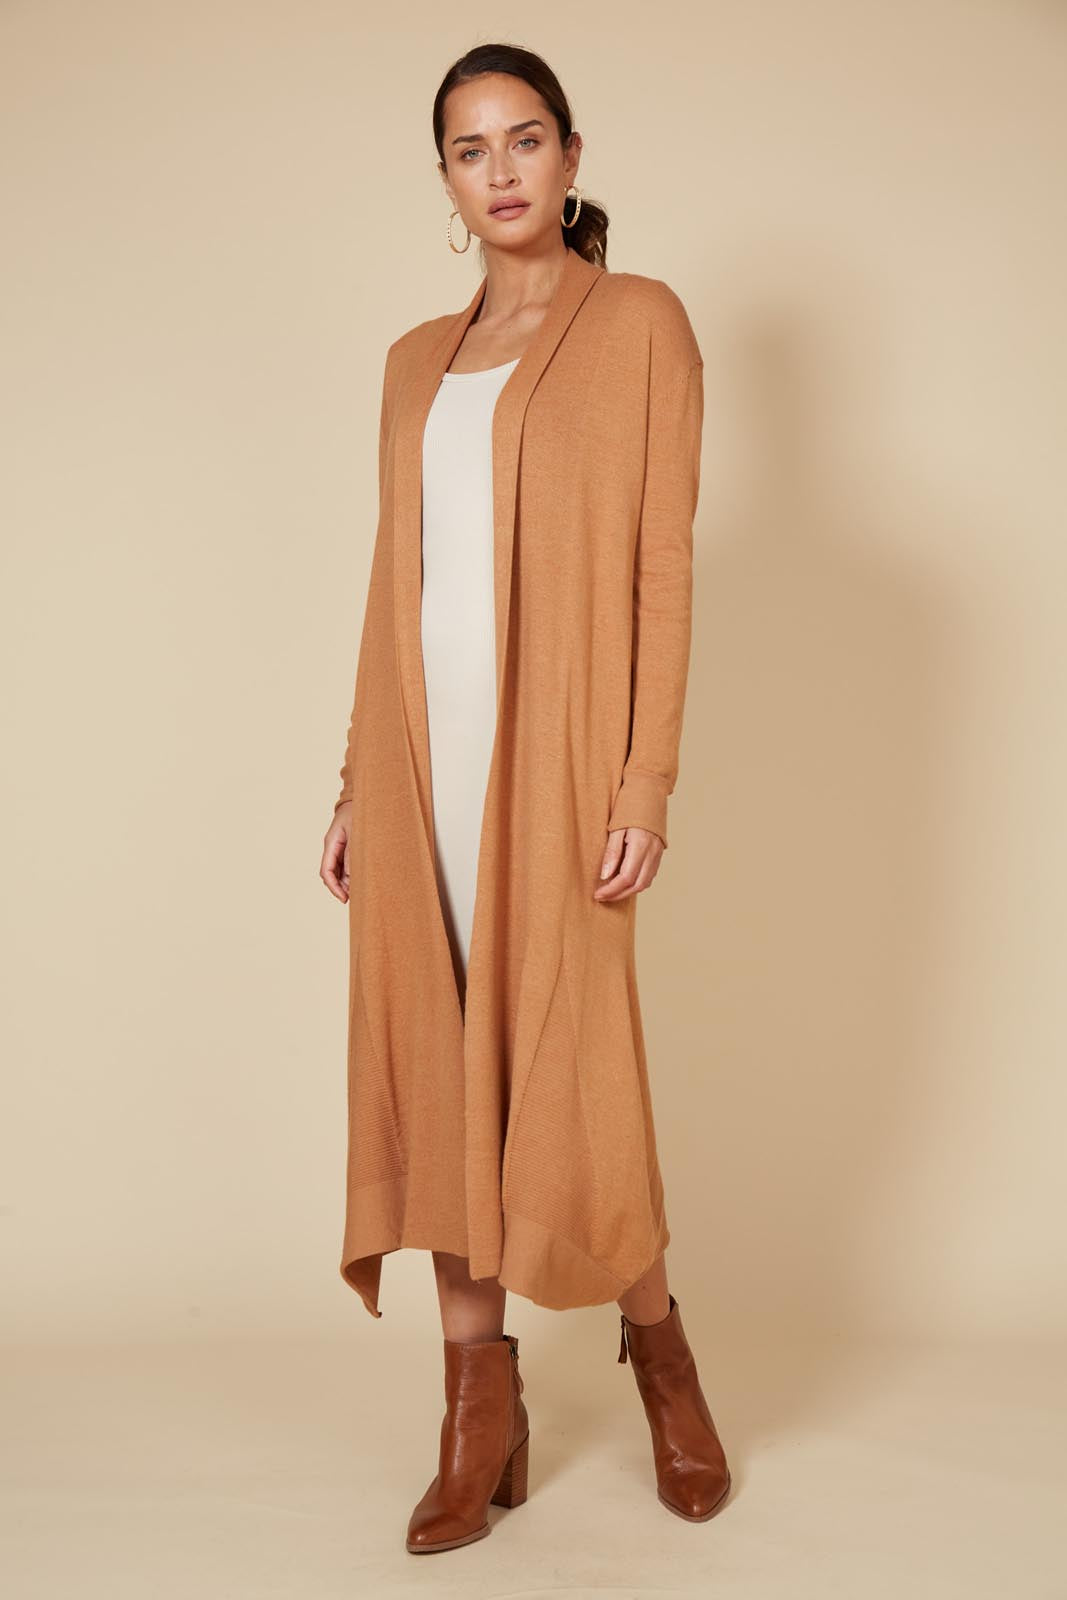 Cleo Longline Cardigan - Caramel - eb&ive Clothing - Knit Cardigan Long One Size